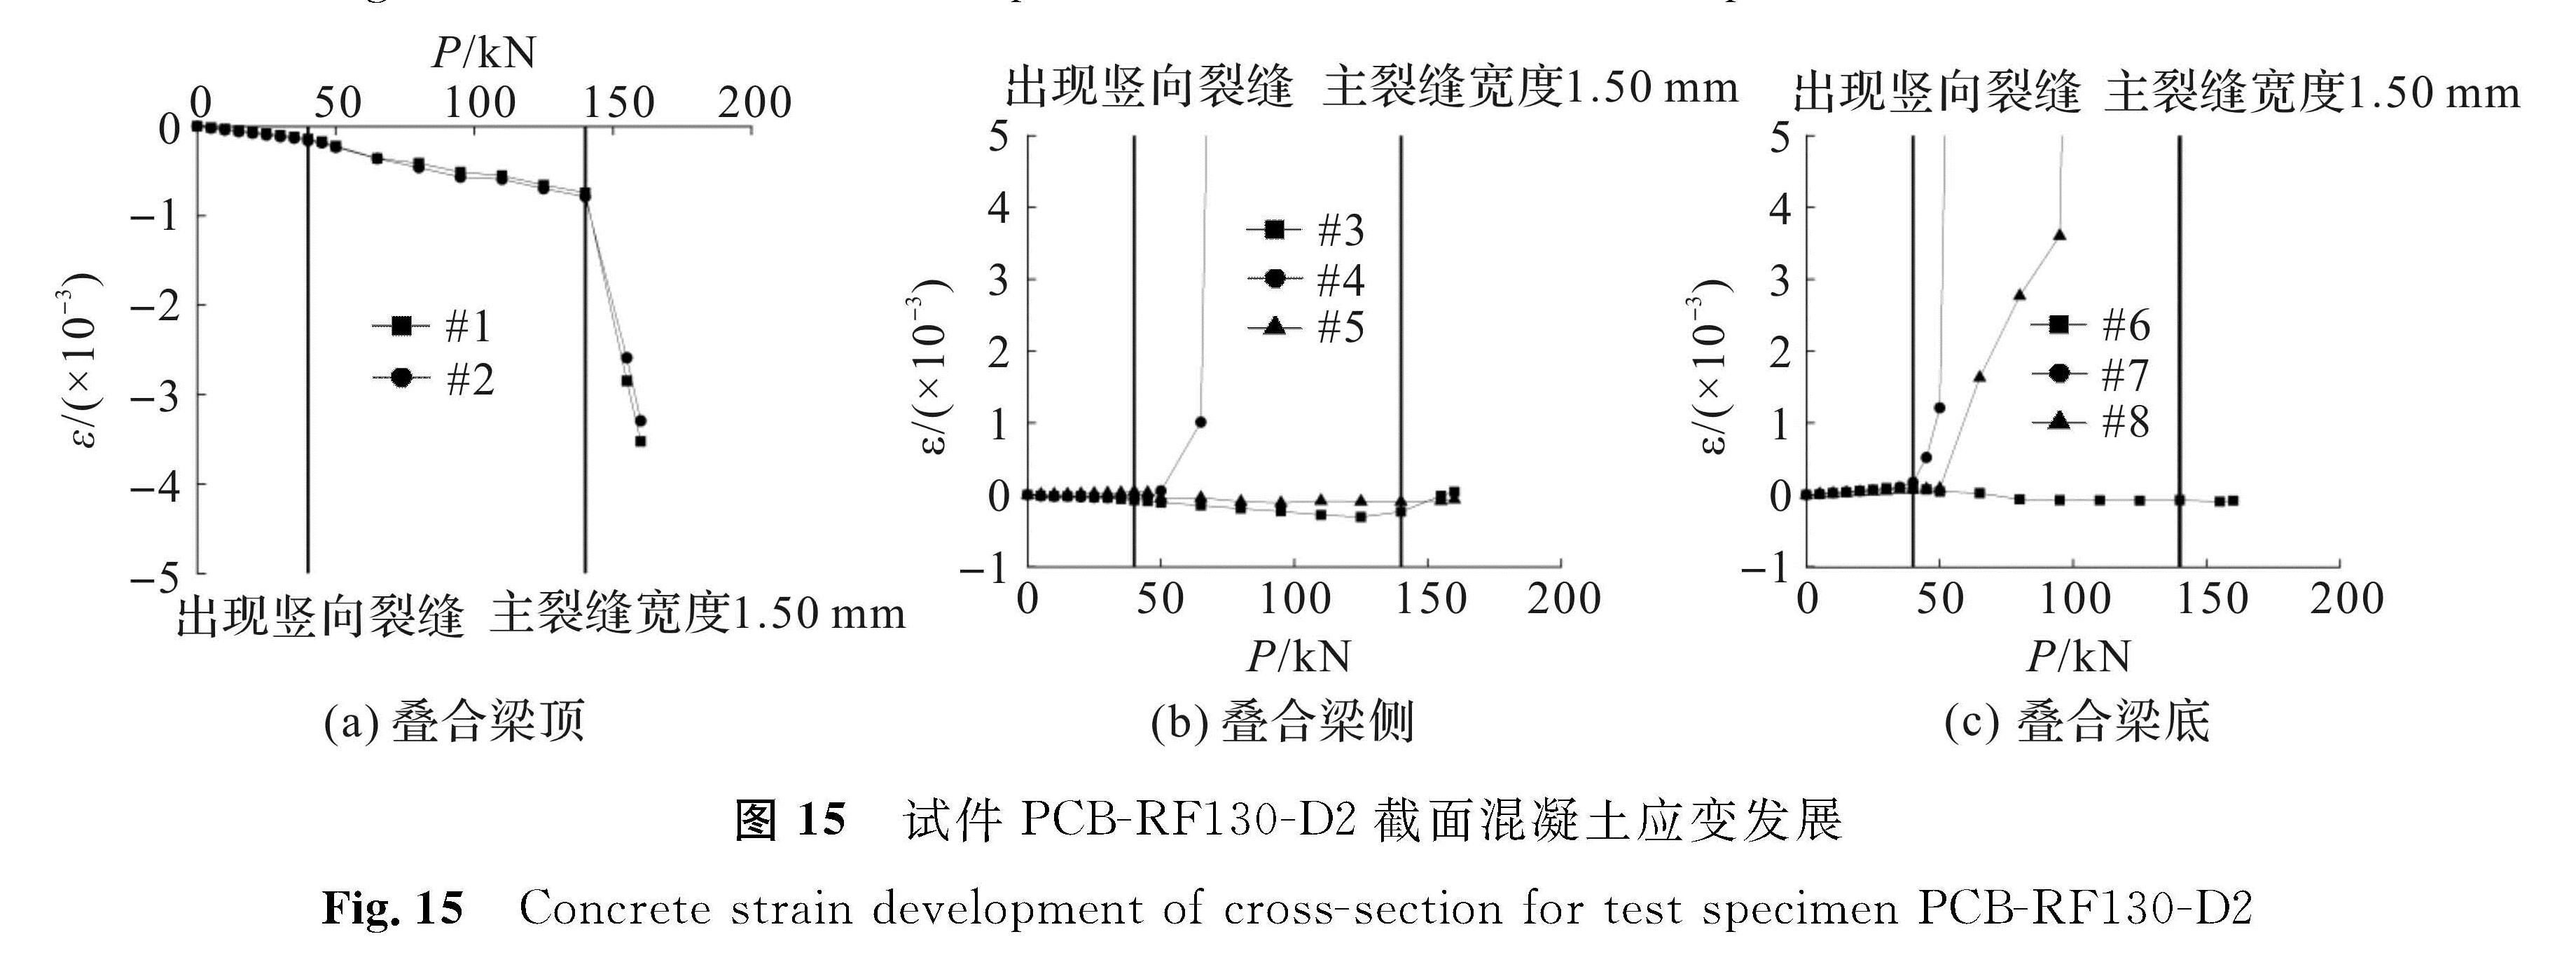 图 15 试件PCB-RF130-D2截面混凝土应变发展<br/>Fig.15 Concrete strain development of cross-section for test specimen PCB-RF130-D2